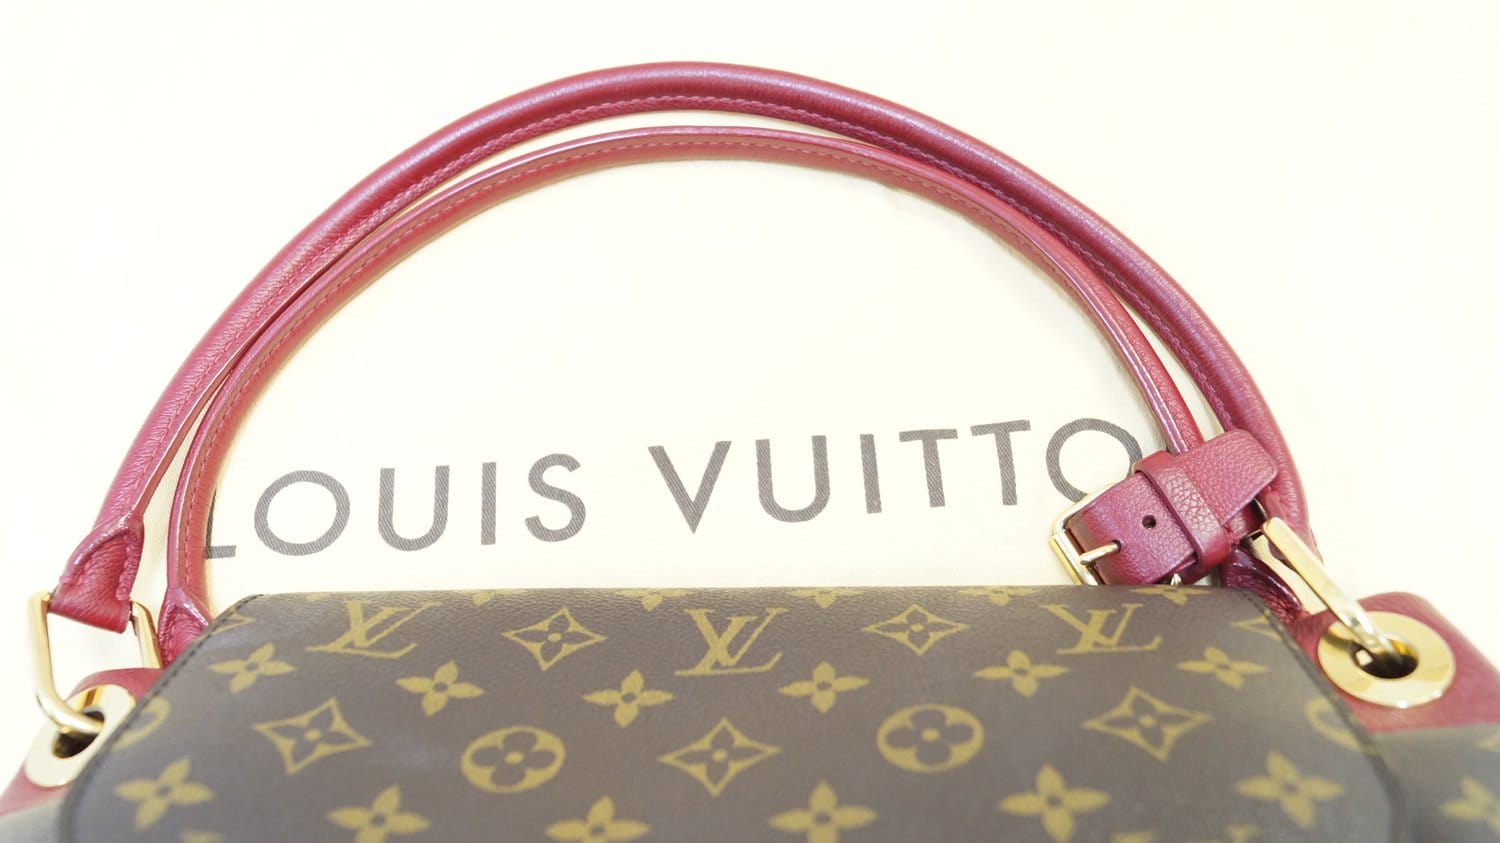 Louis Vuitton Monogram Olympe M40579 Women's Shoulder Bag Bordeaux